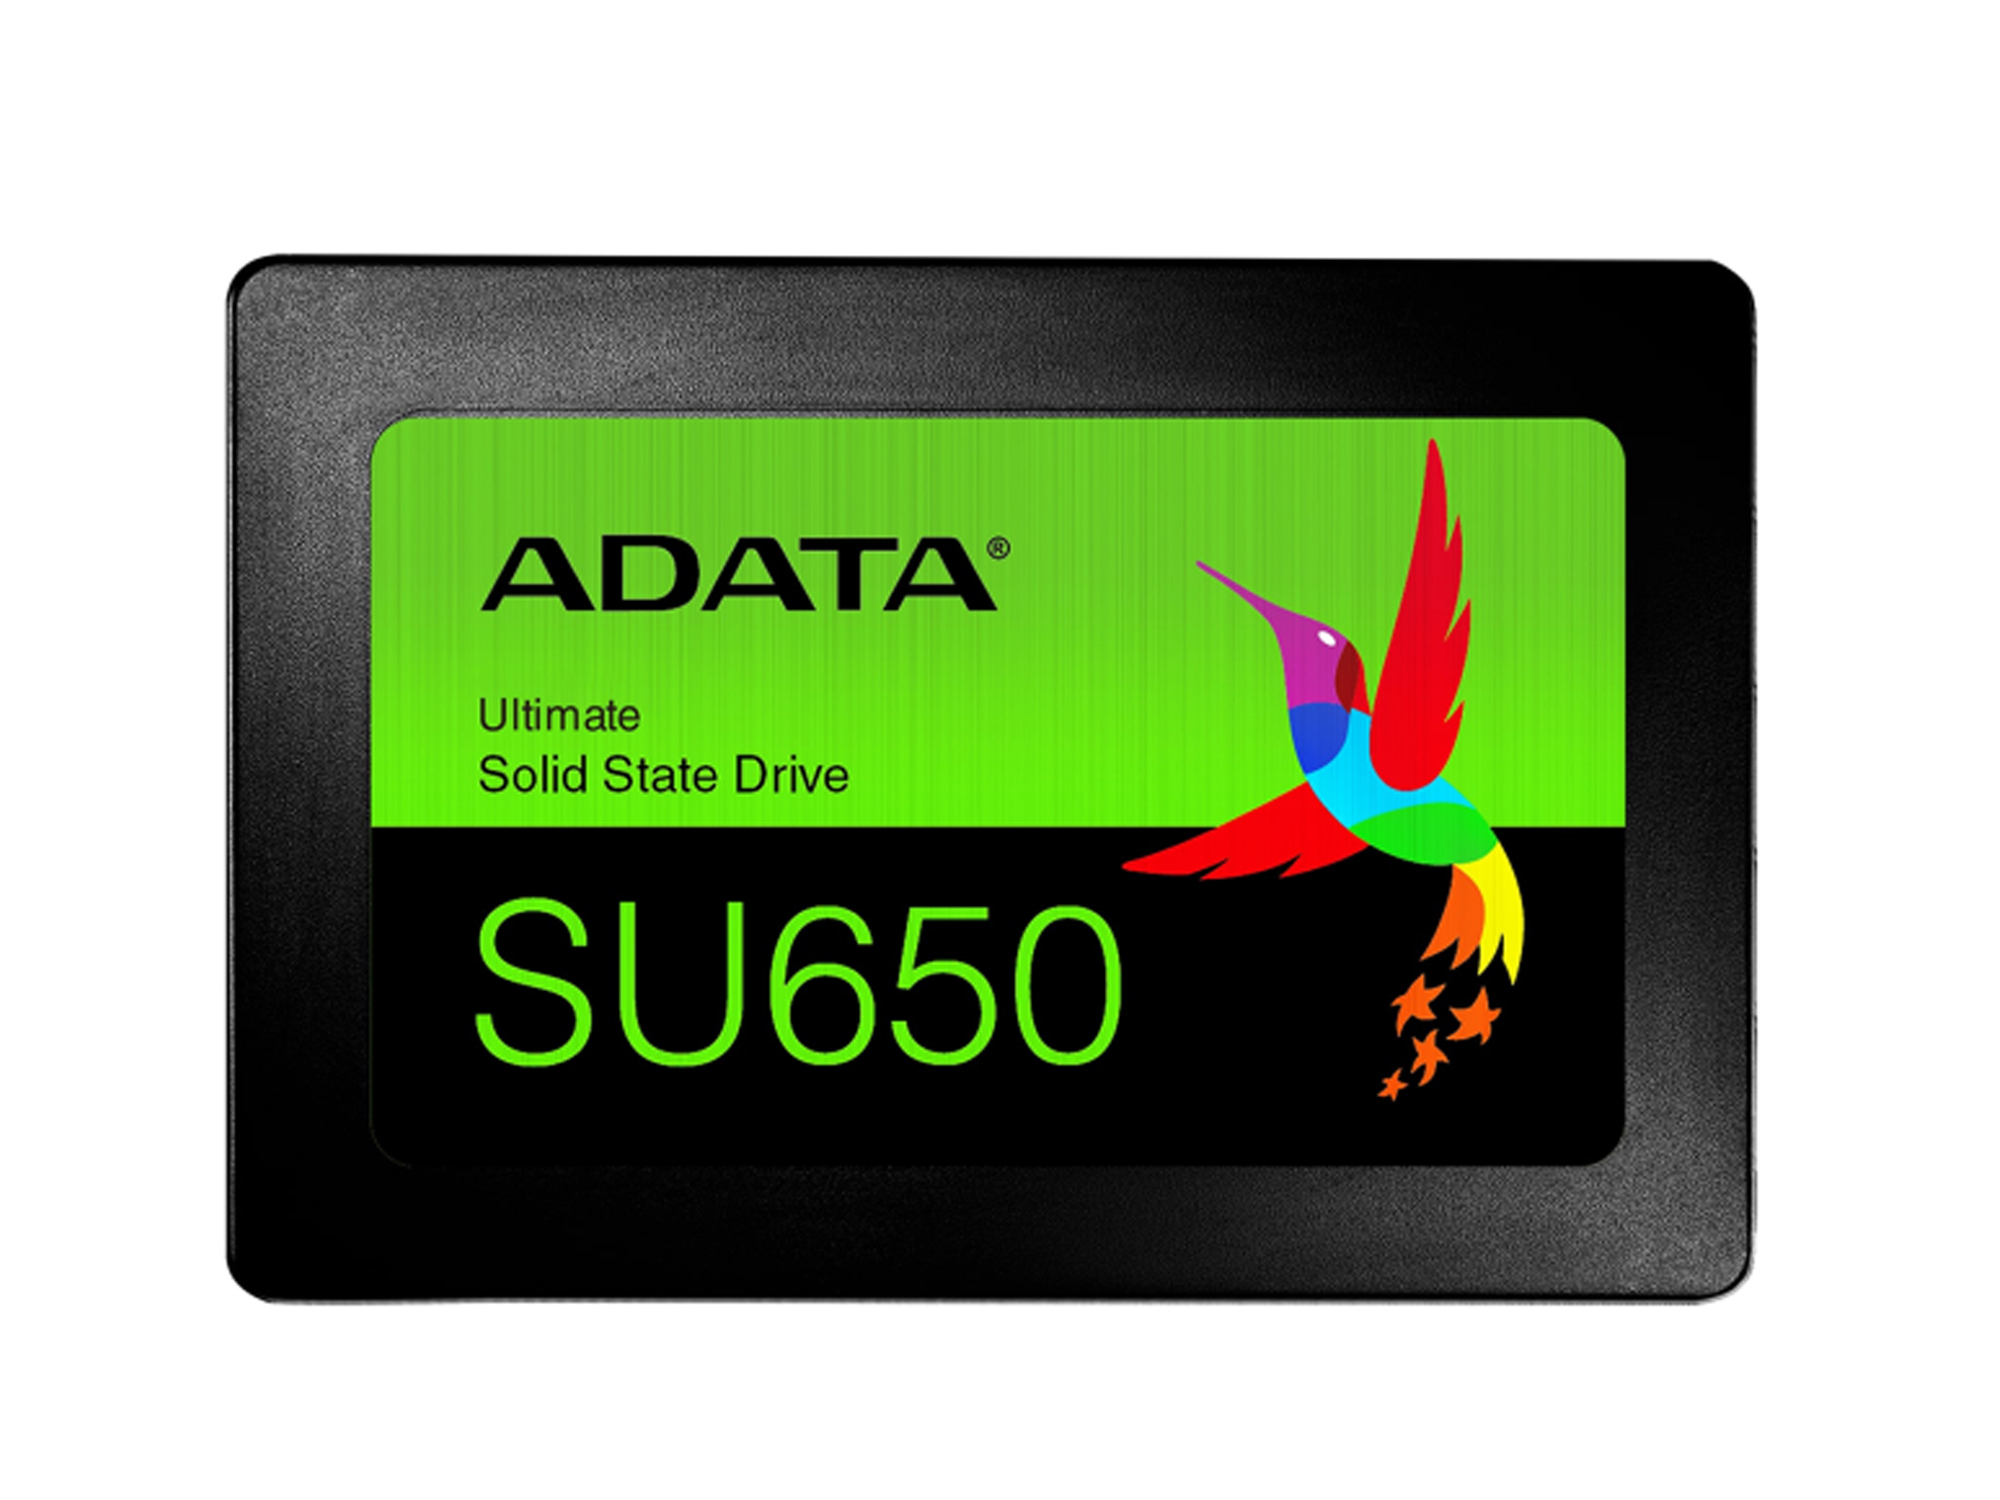 SSD ADATA 240GB SU650 2.5" SATA